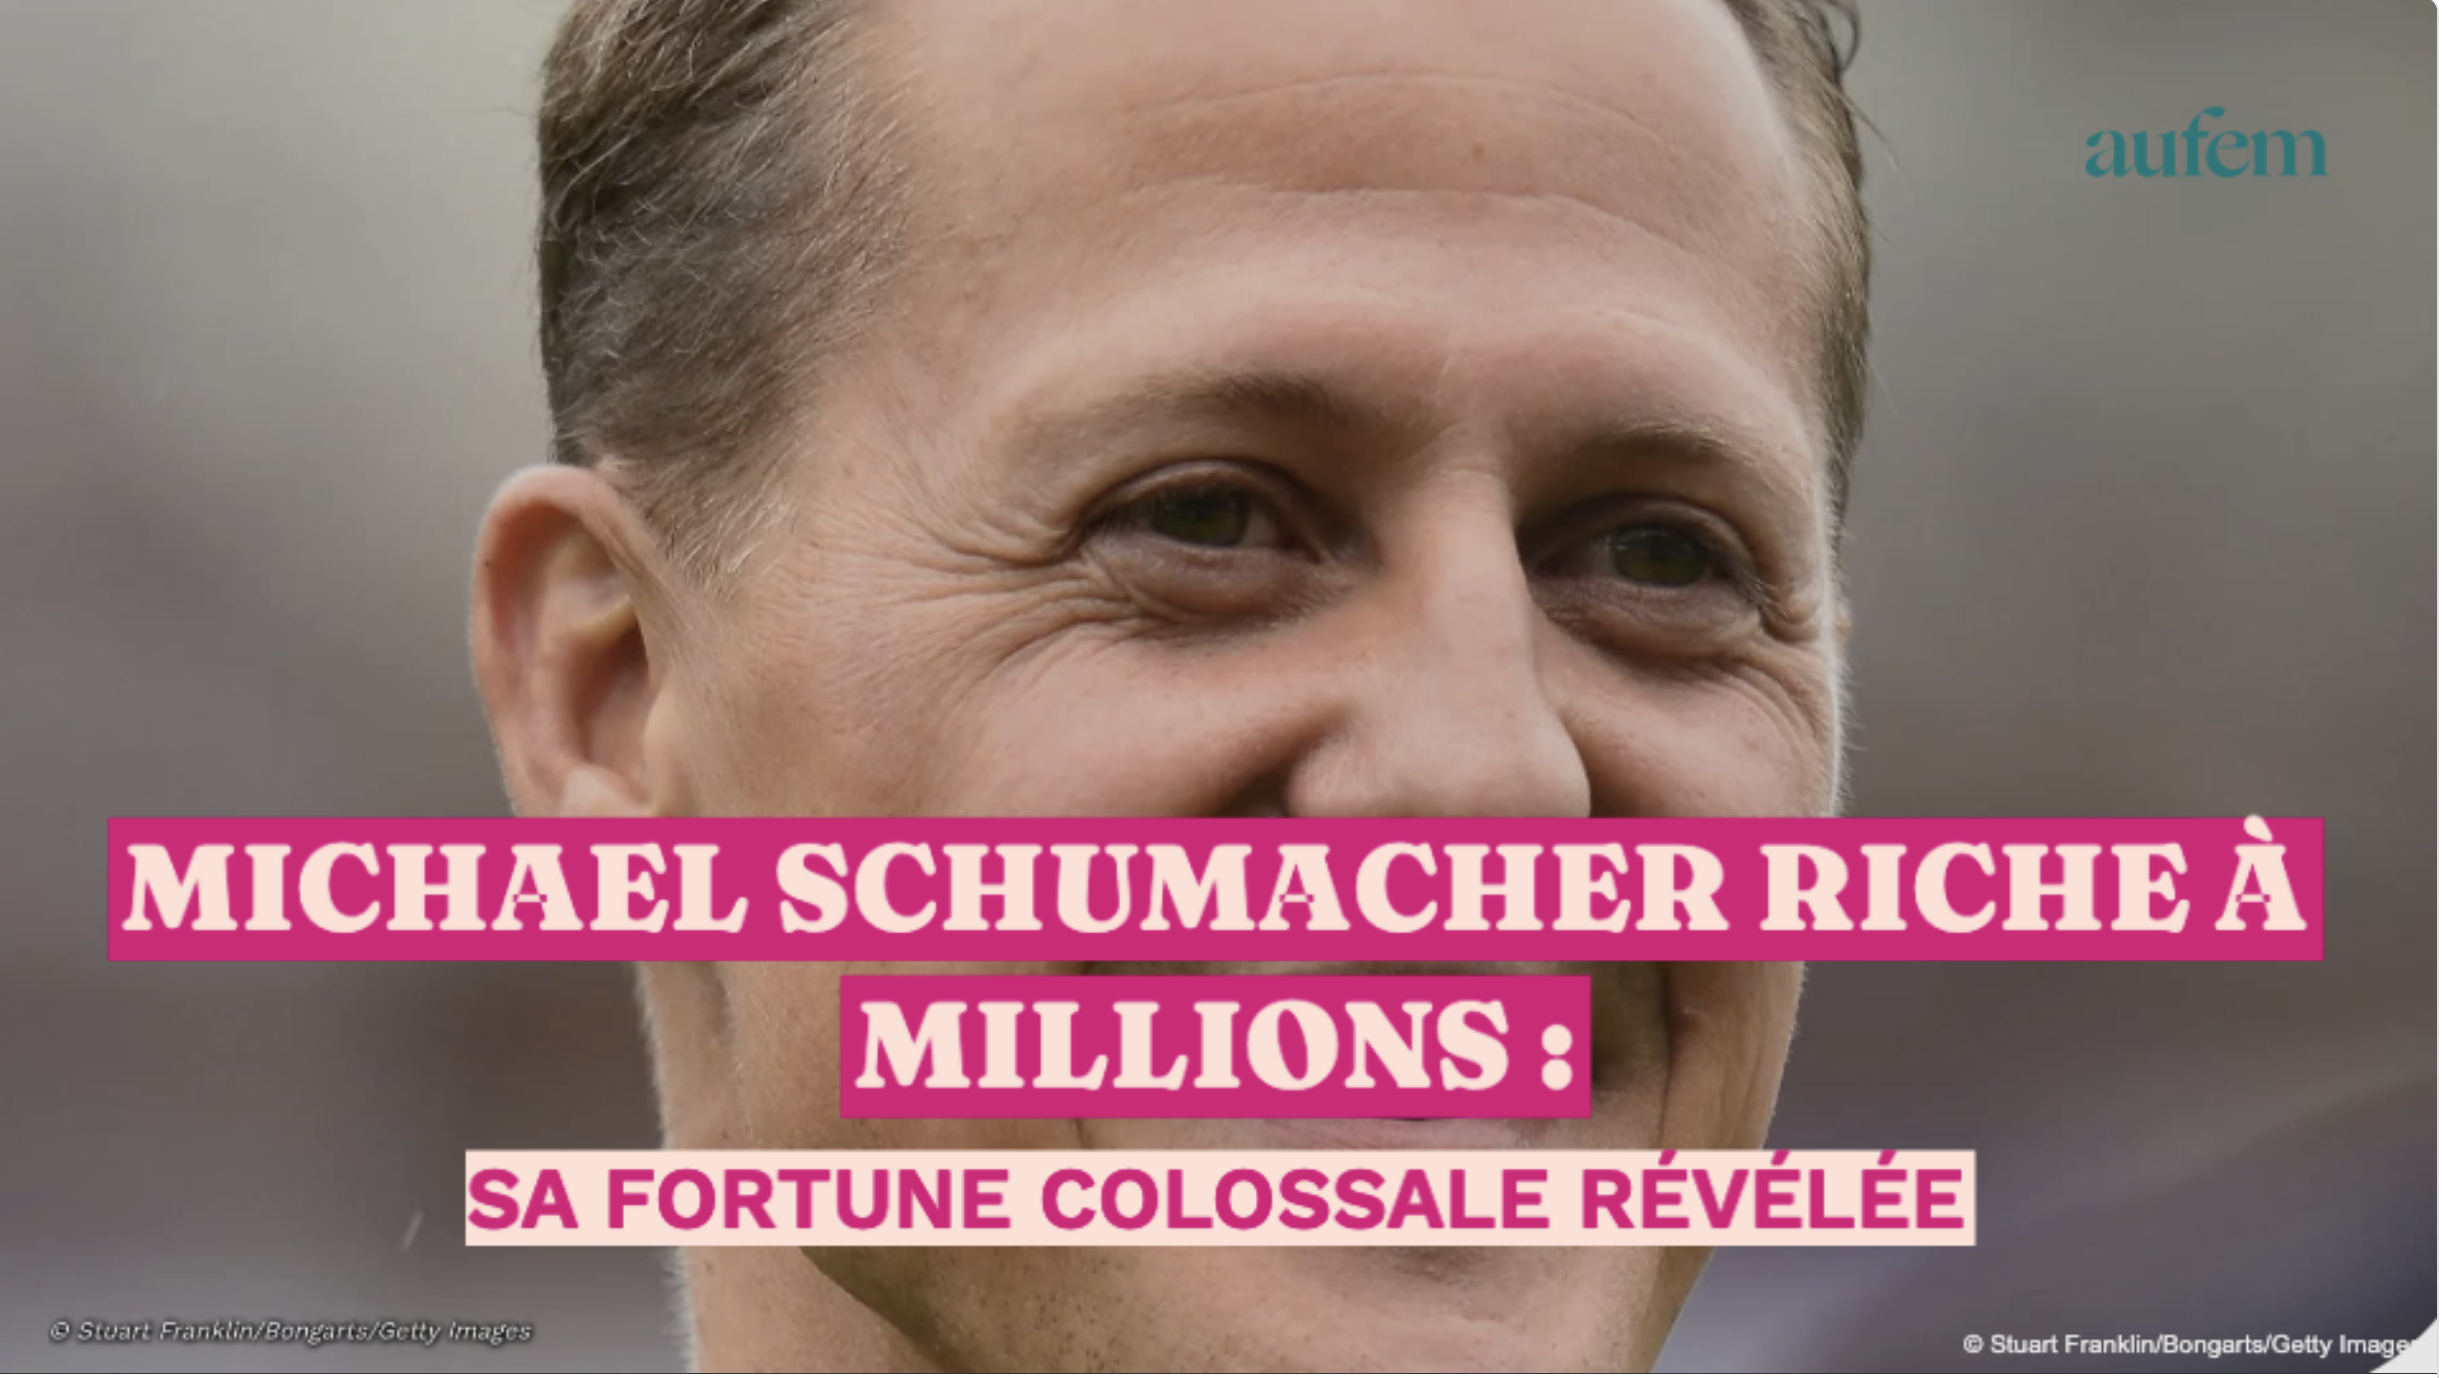 Michael Schumacher riche à millions : sa fortune colossale révélée